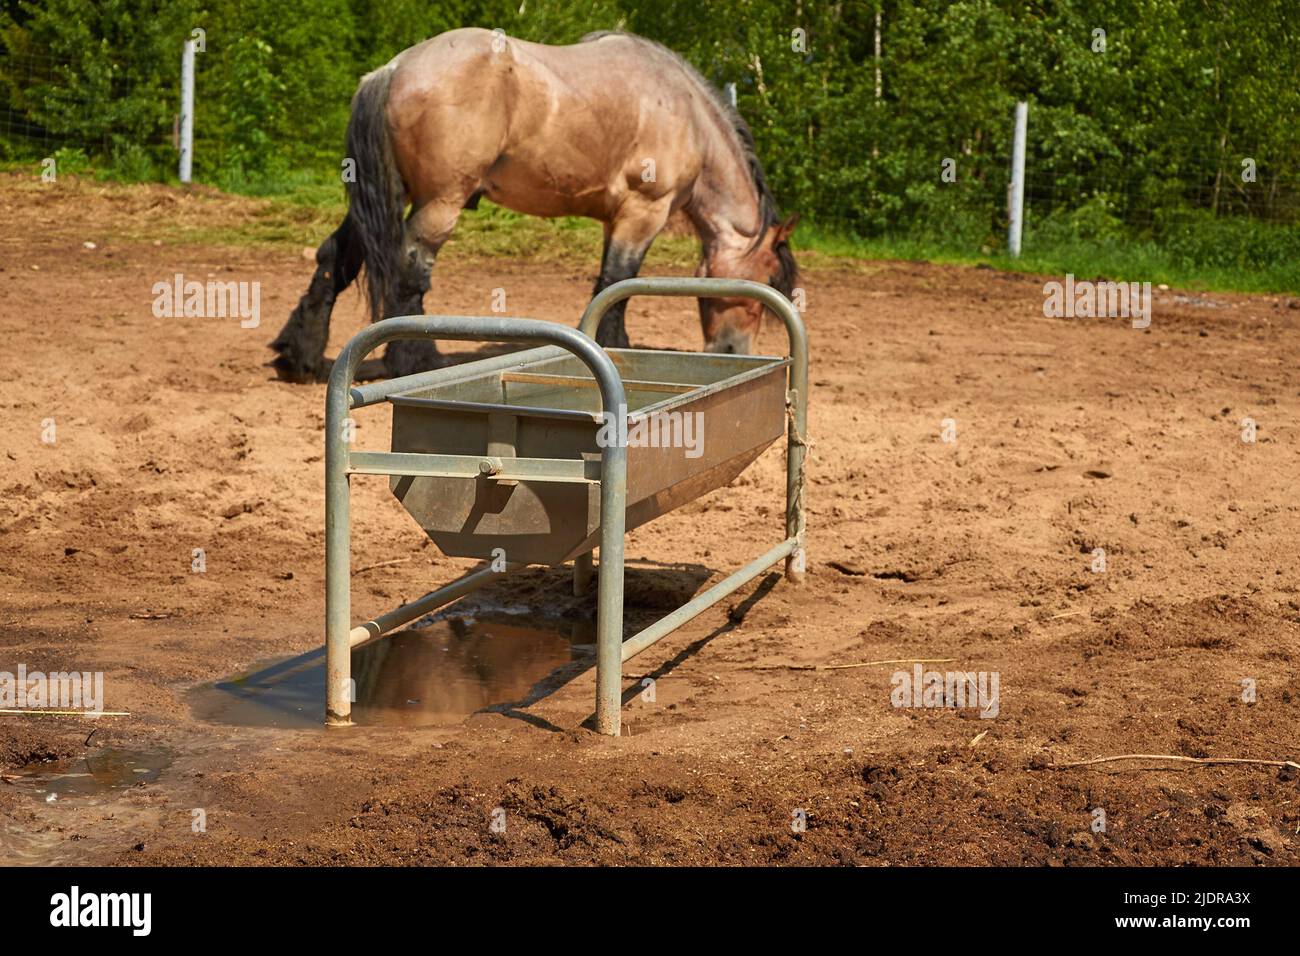 Vasca in metallo per annaffiare cavalli in levada sullo sfondo di un cavallo da pascolo Foto Stock